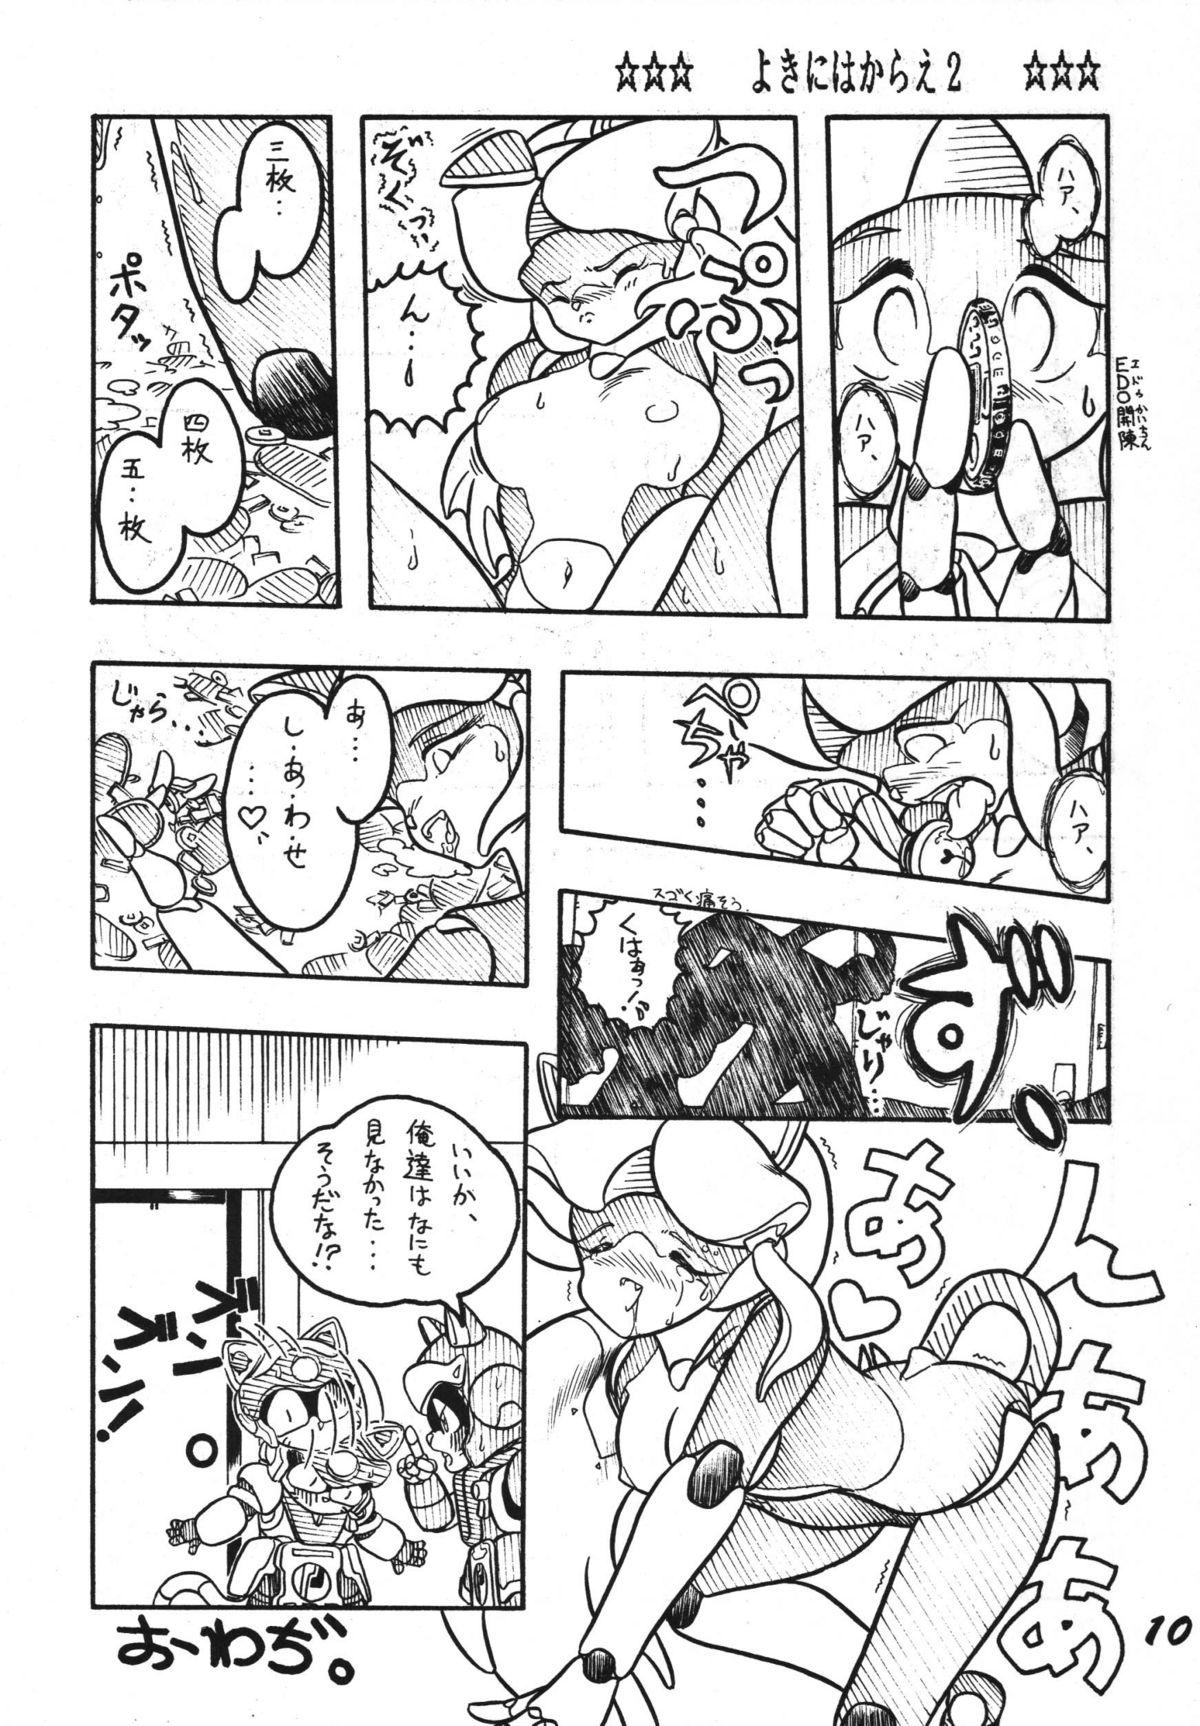 Bunduda Yokini Hakarae - Ni no Maki - Samurai pizza cats Chupando - Page 10